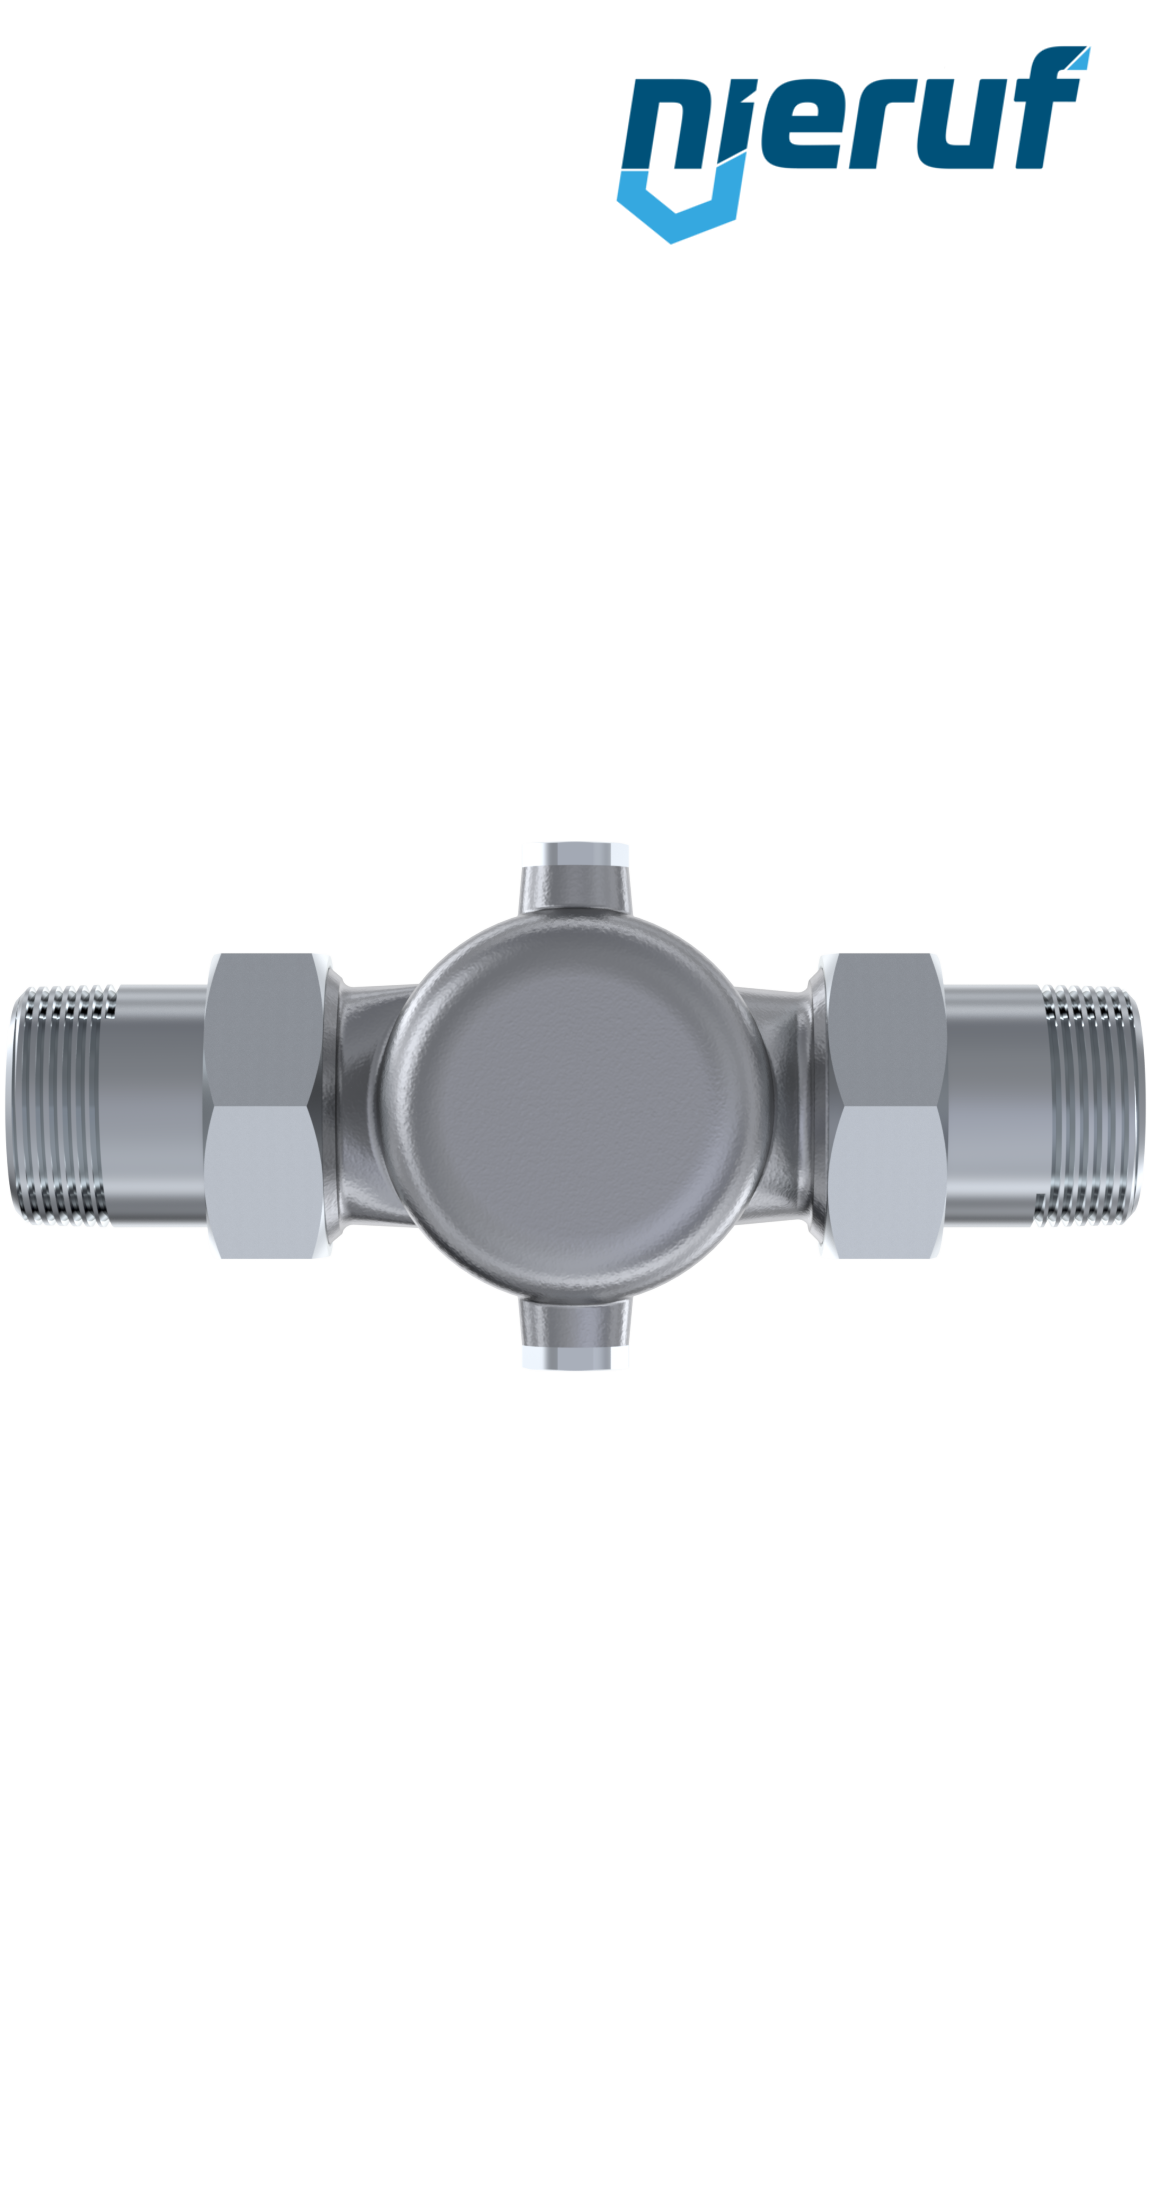 pressure reducing valve 1" inch male thread DM04 stainless steel FKM 5.0 - 15.0 bar